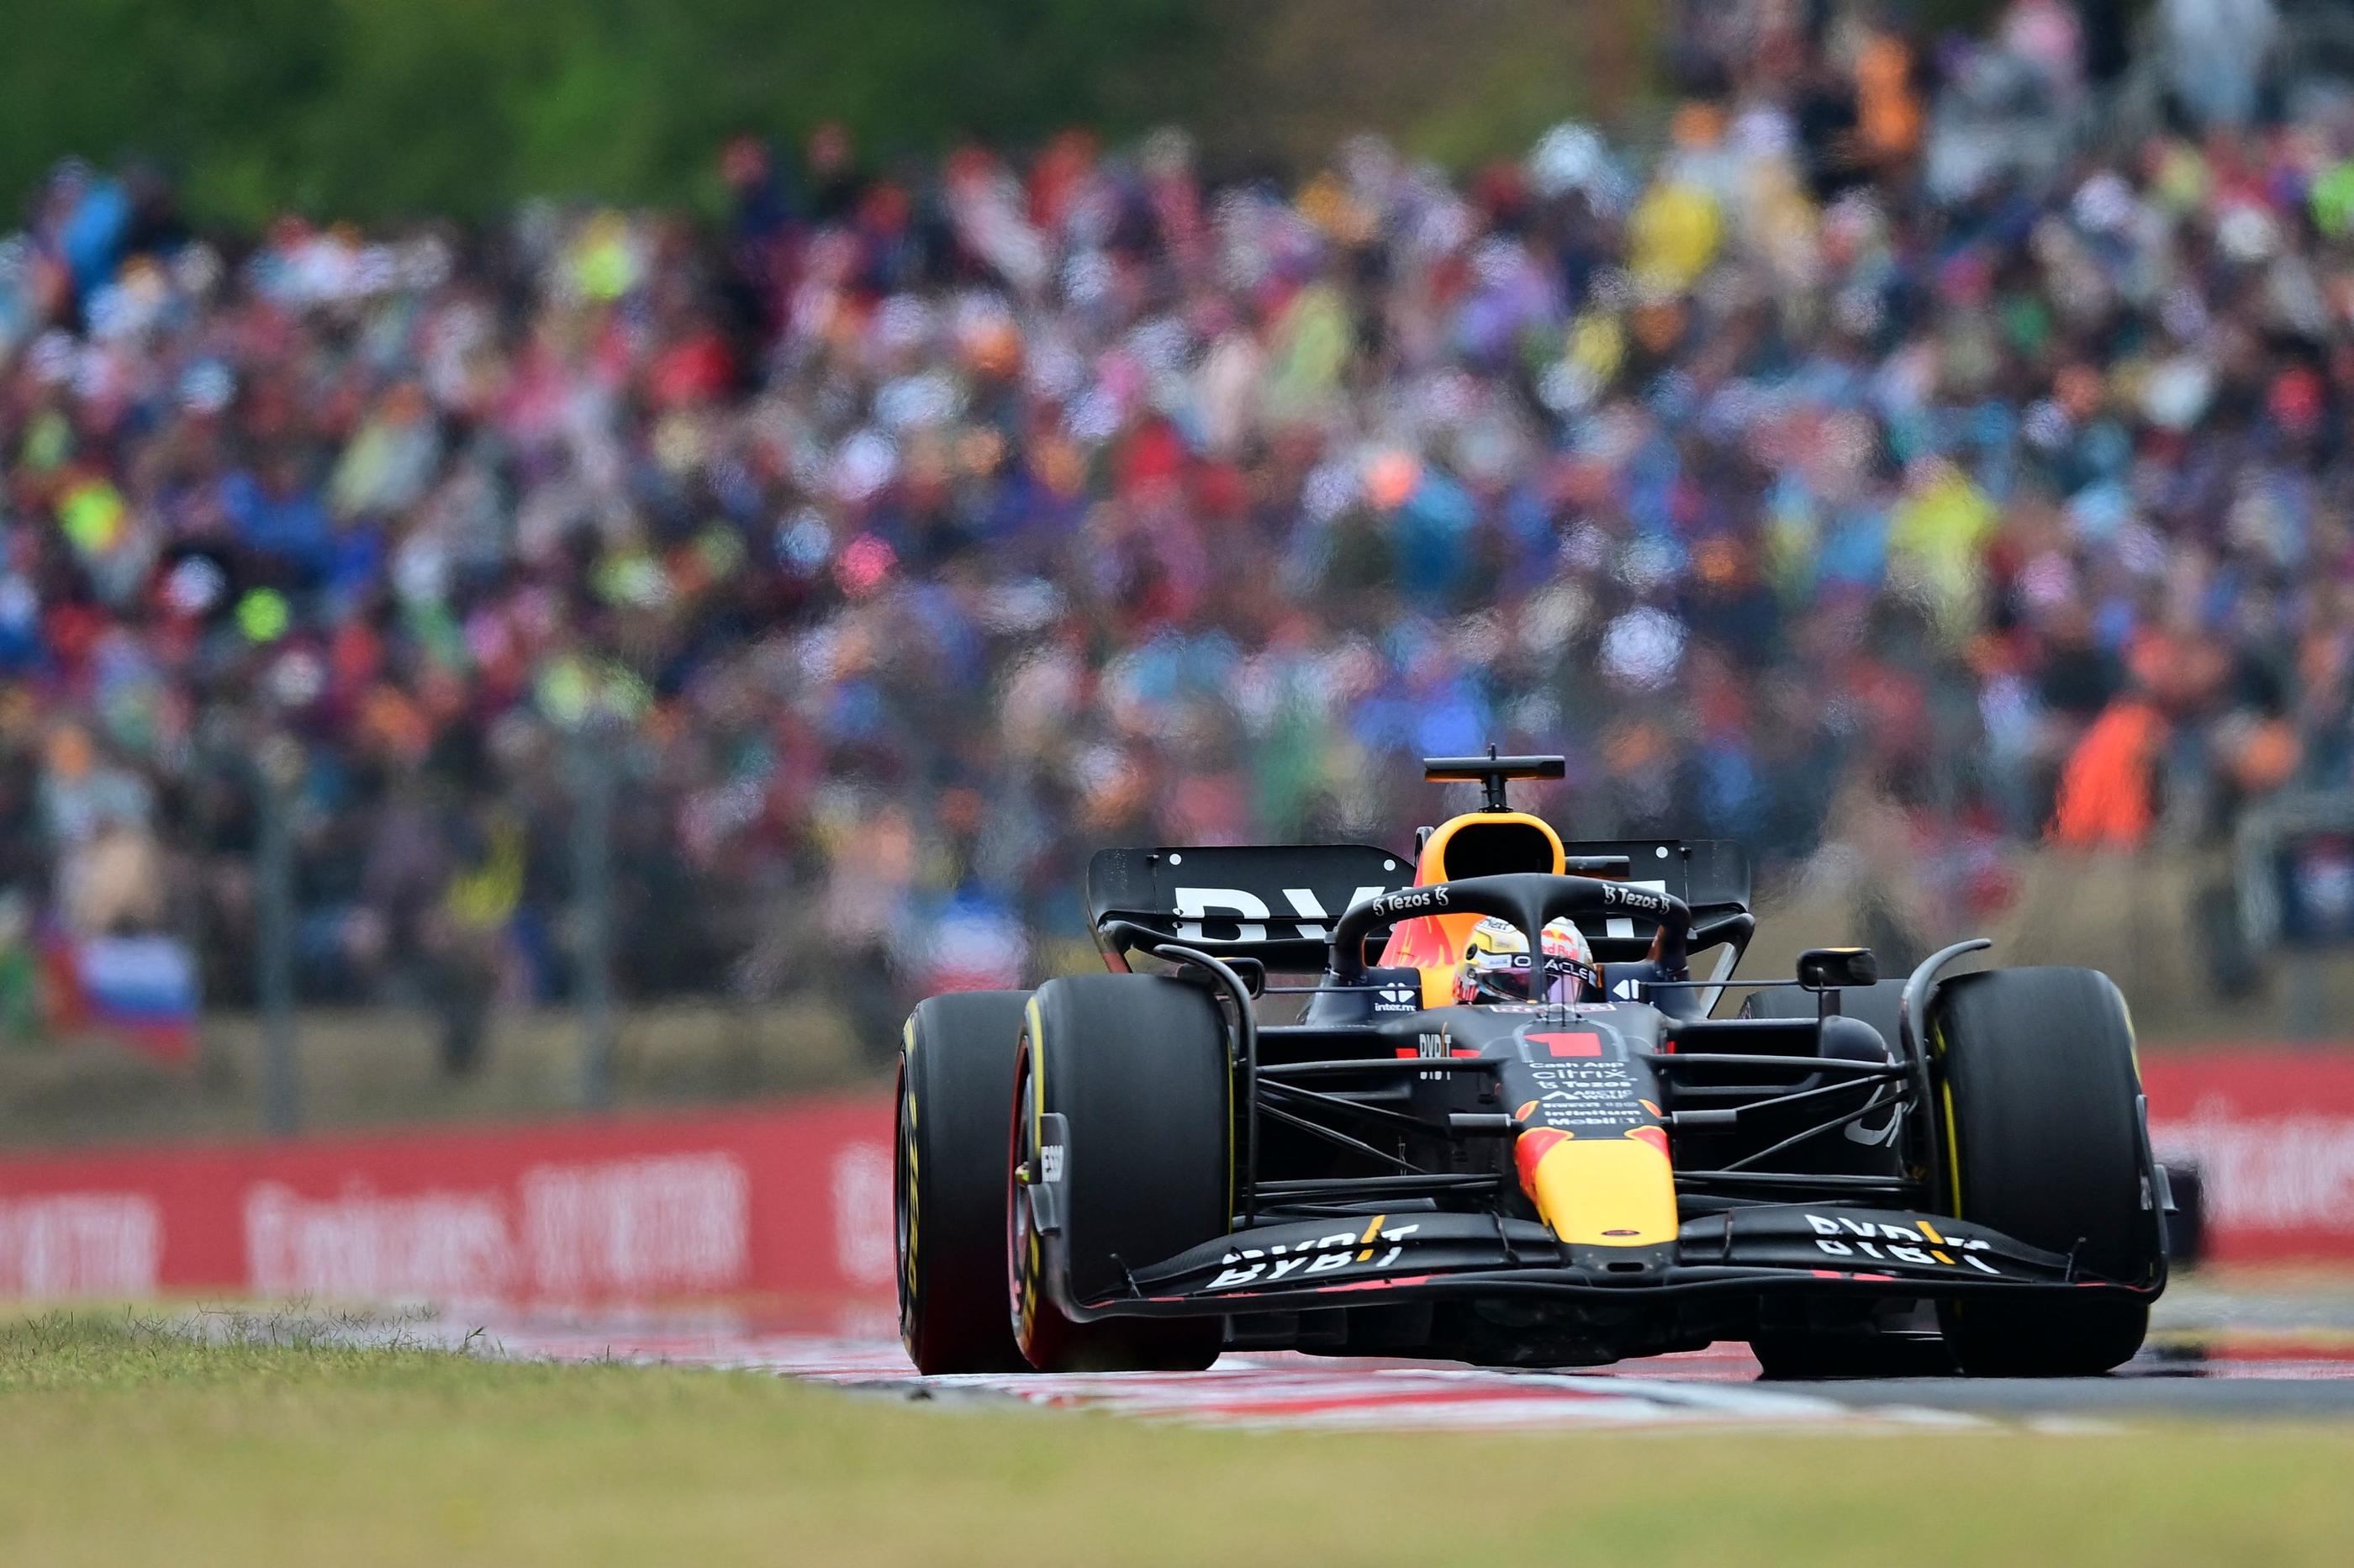 Max Verstappen a remporté son 8e Grand Prix de la saison. Jure MAKOVEC / AFP